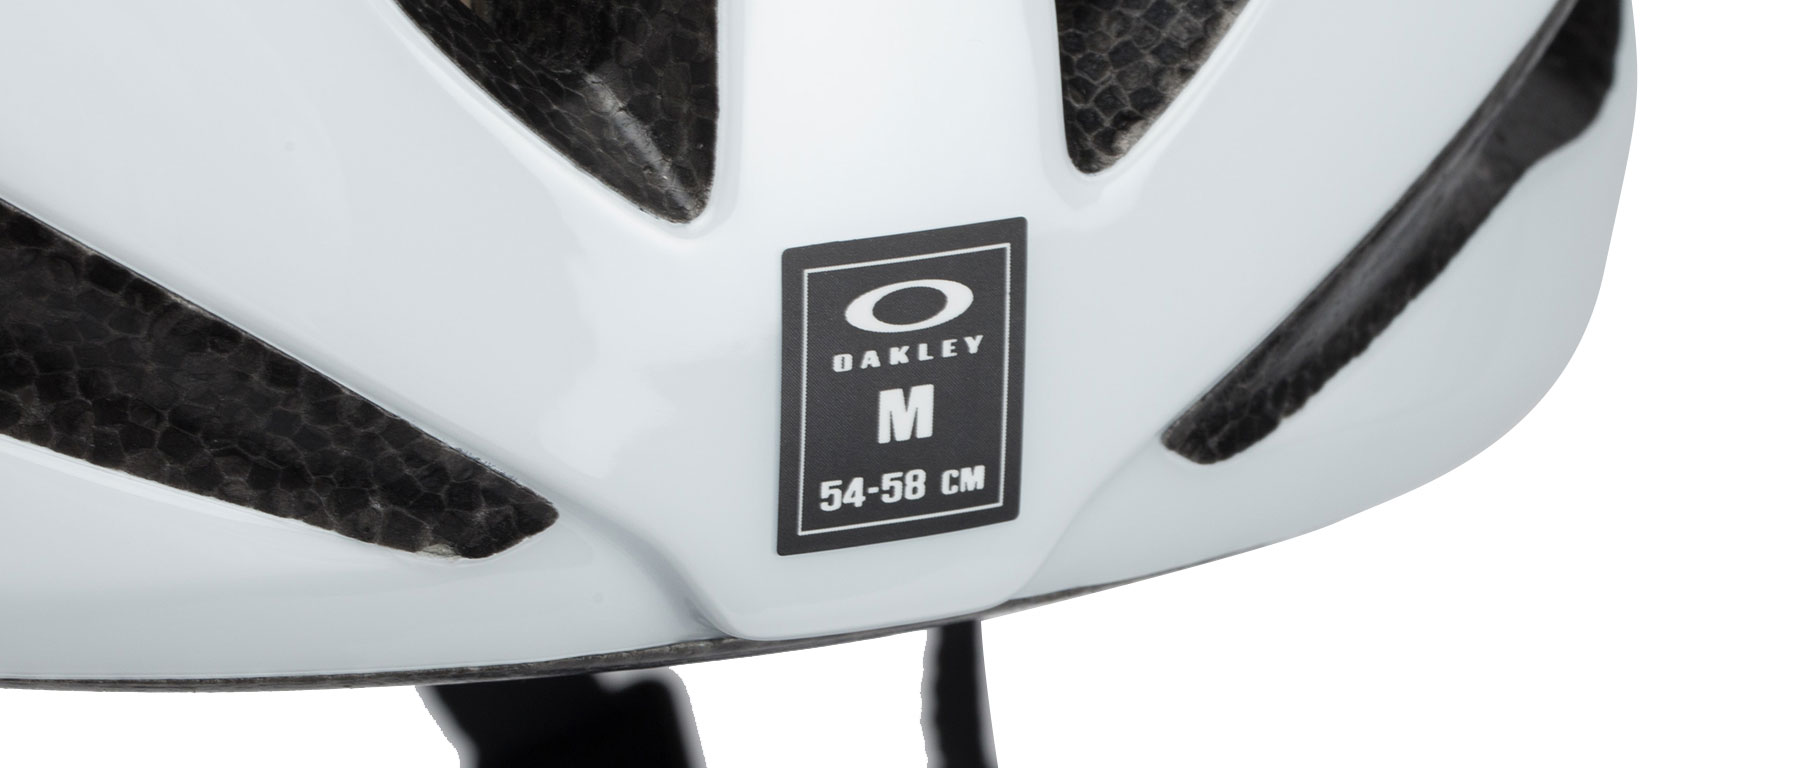 Oakley ARO5 Helmet